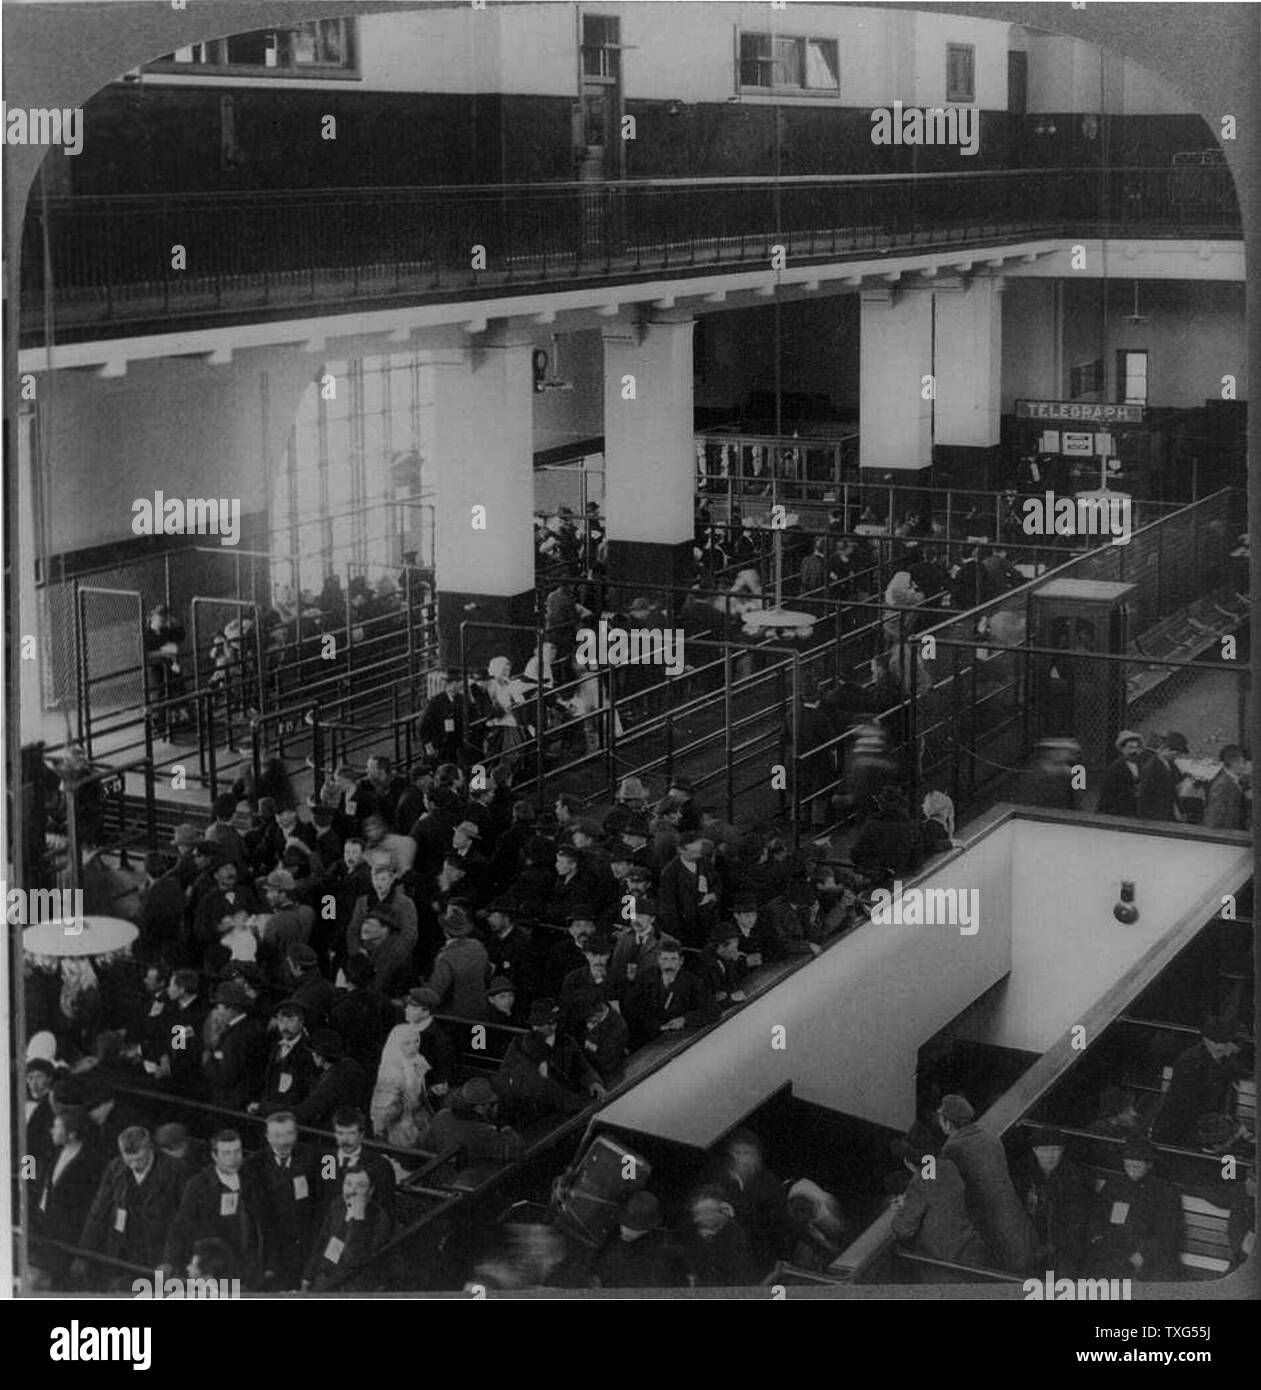 Les immigrants arrivés aux etats unis de l'Europe attendent d'être traitées dans le bâtiment d'immigrants : Ellis Island, New York. Banque D'Images